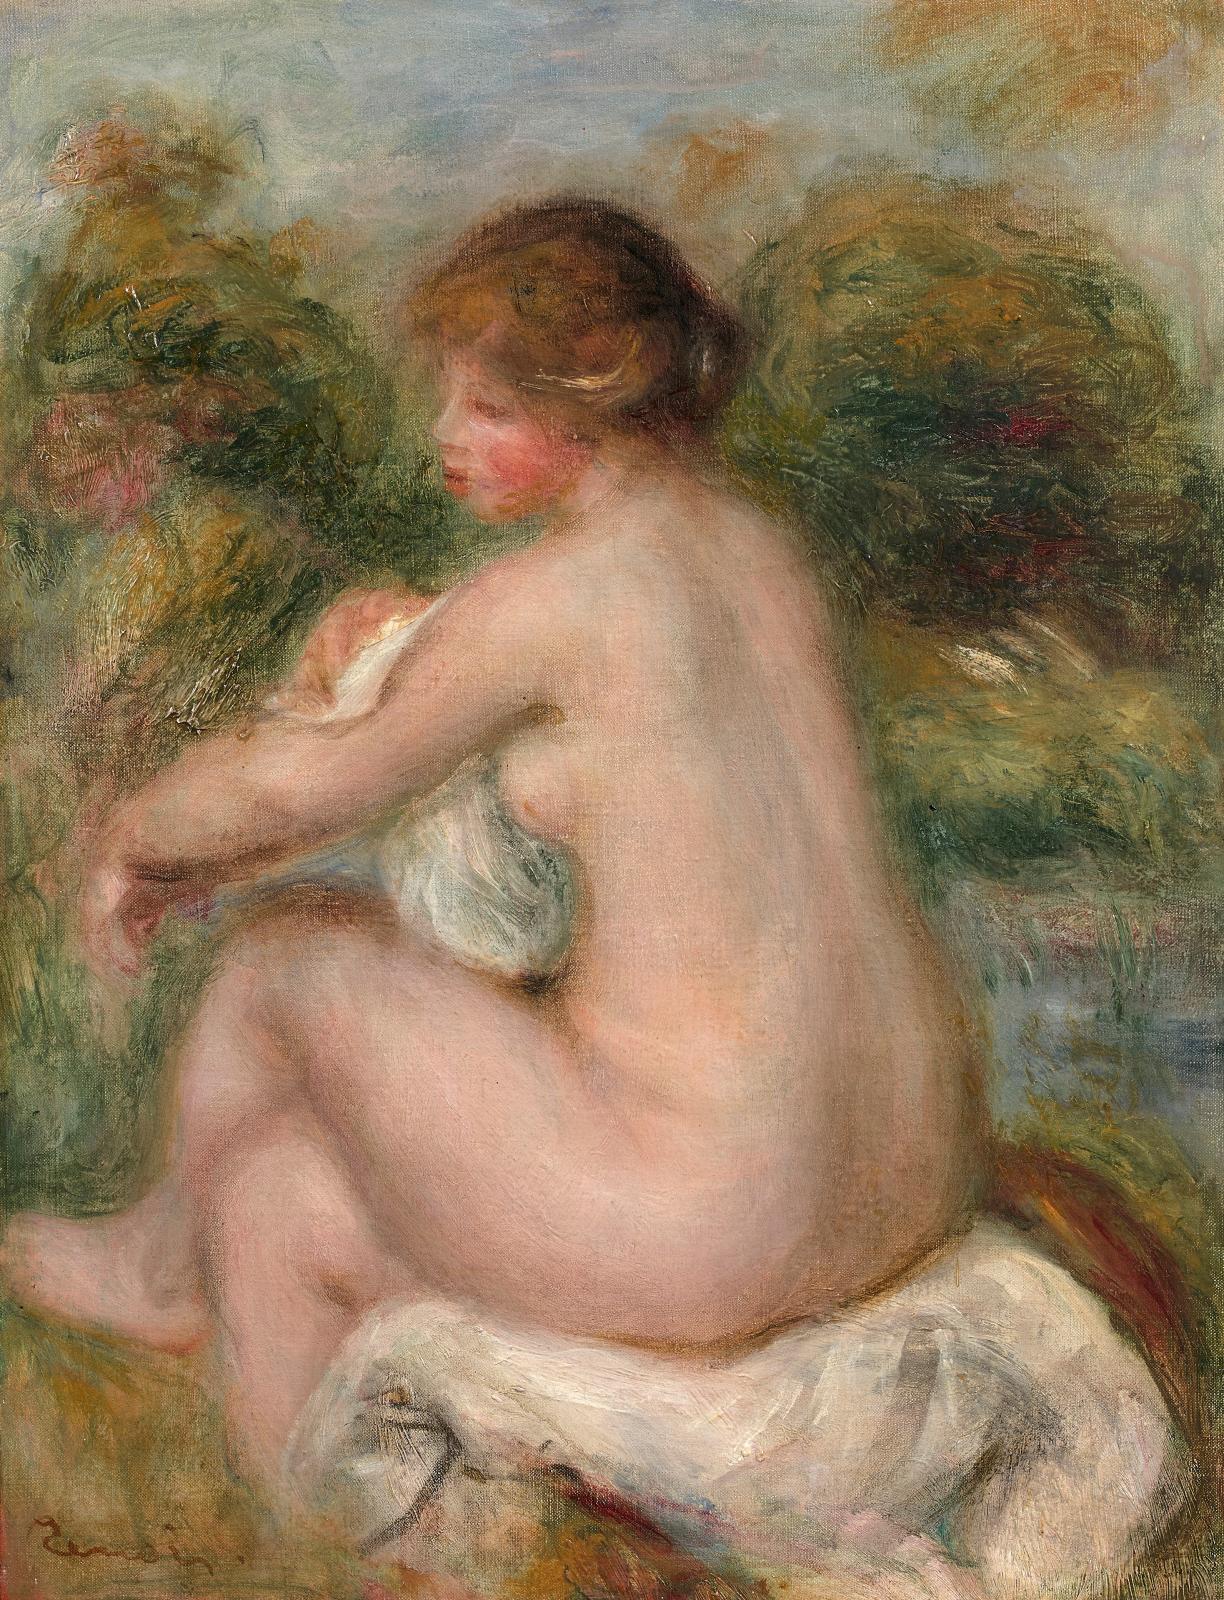 Pierre Auguste Renoir (1841-1919), La Baigneuse assise, 1905,huile sur toile, 35,3 x 27,2 cm. Estimation : 200 000/300 000 €